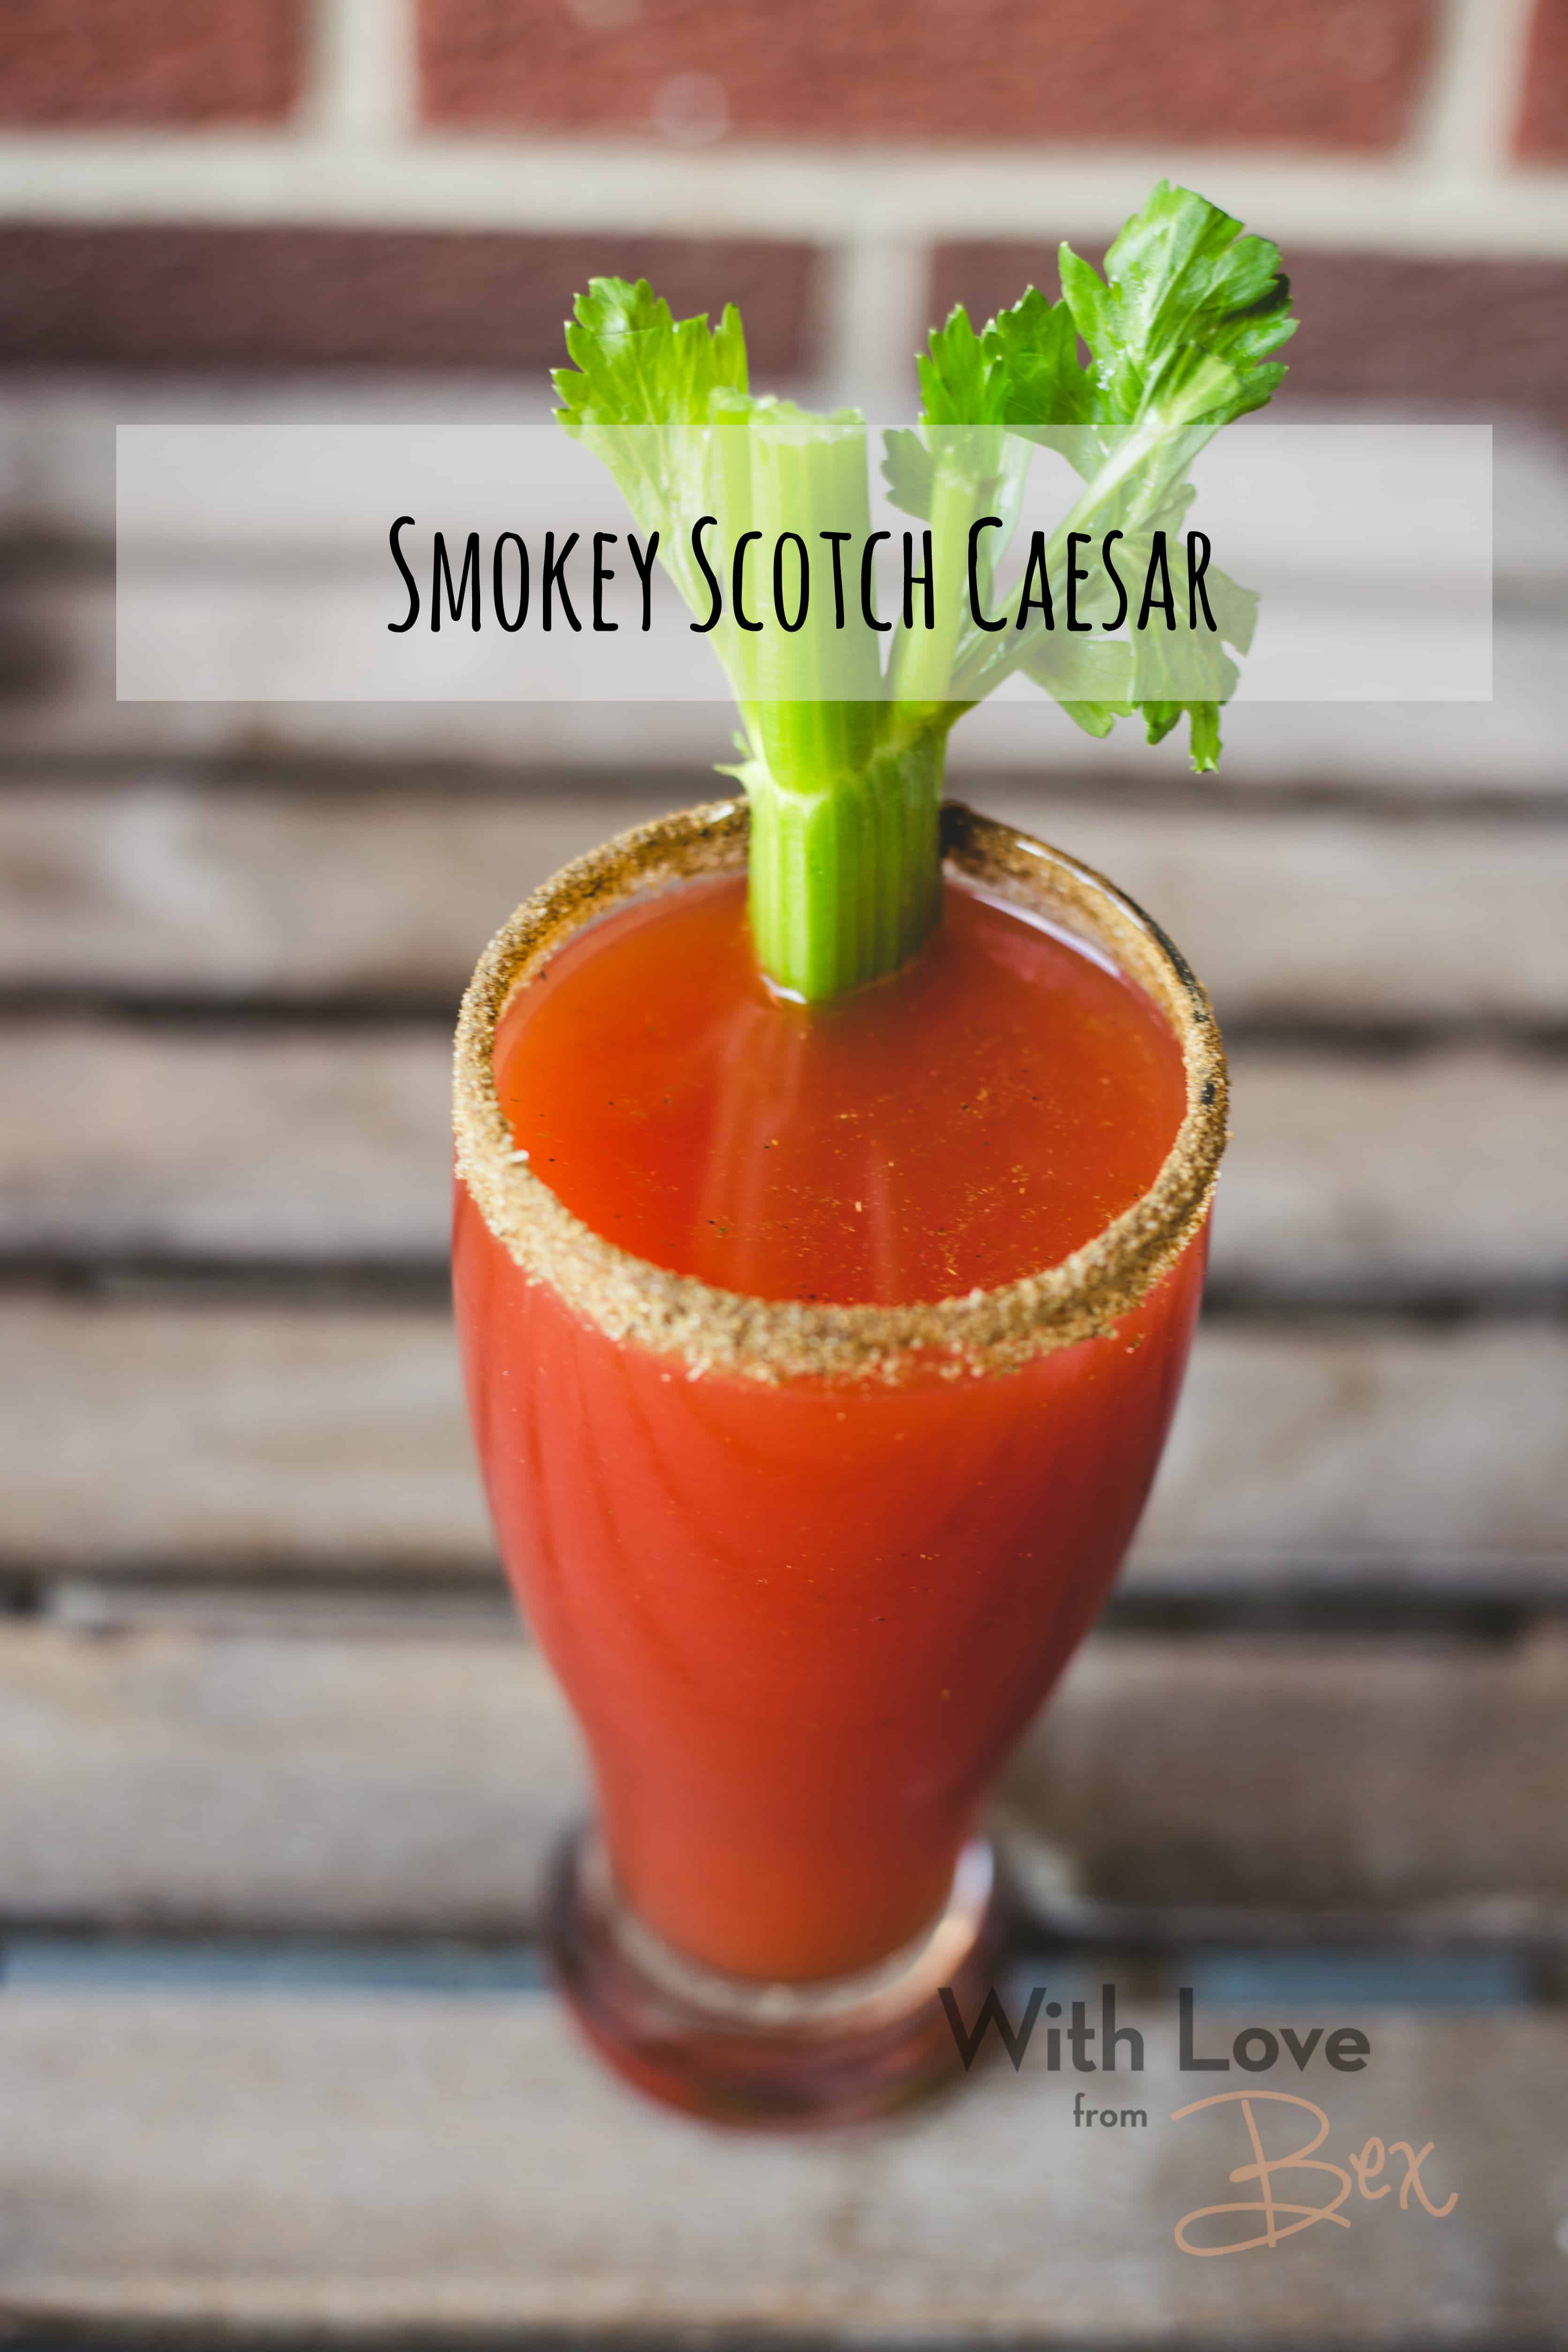 Caesar Series: Smokey Scotch Caesar